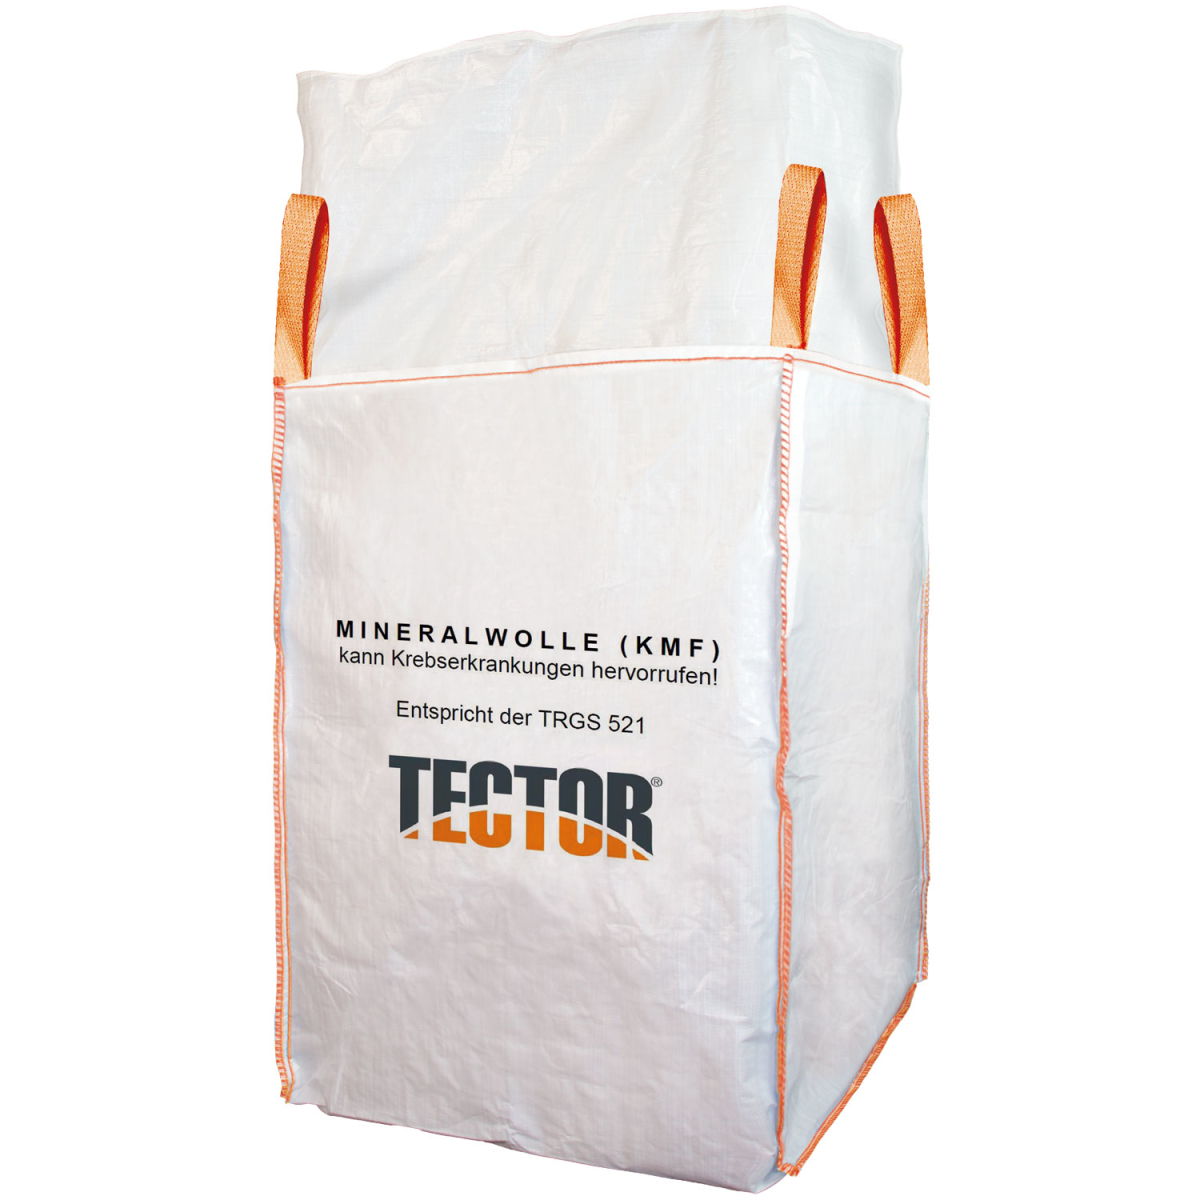 weißer mineralwolle big bag sack mit vier hebeschlaufen in orange und schwarzem aufdruck